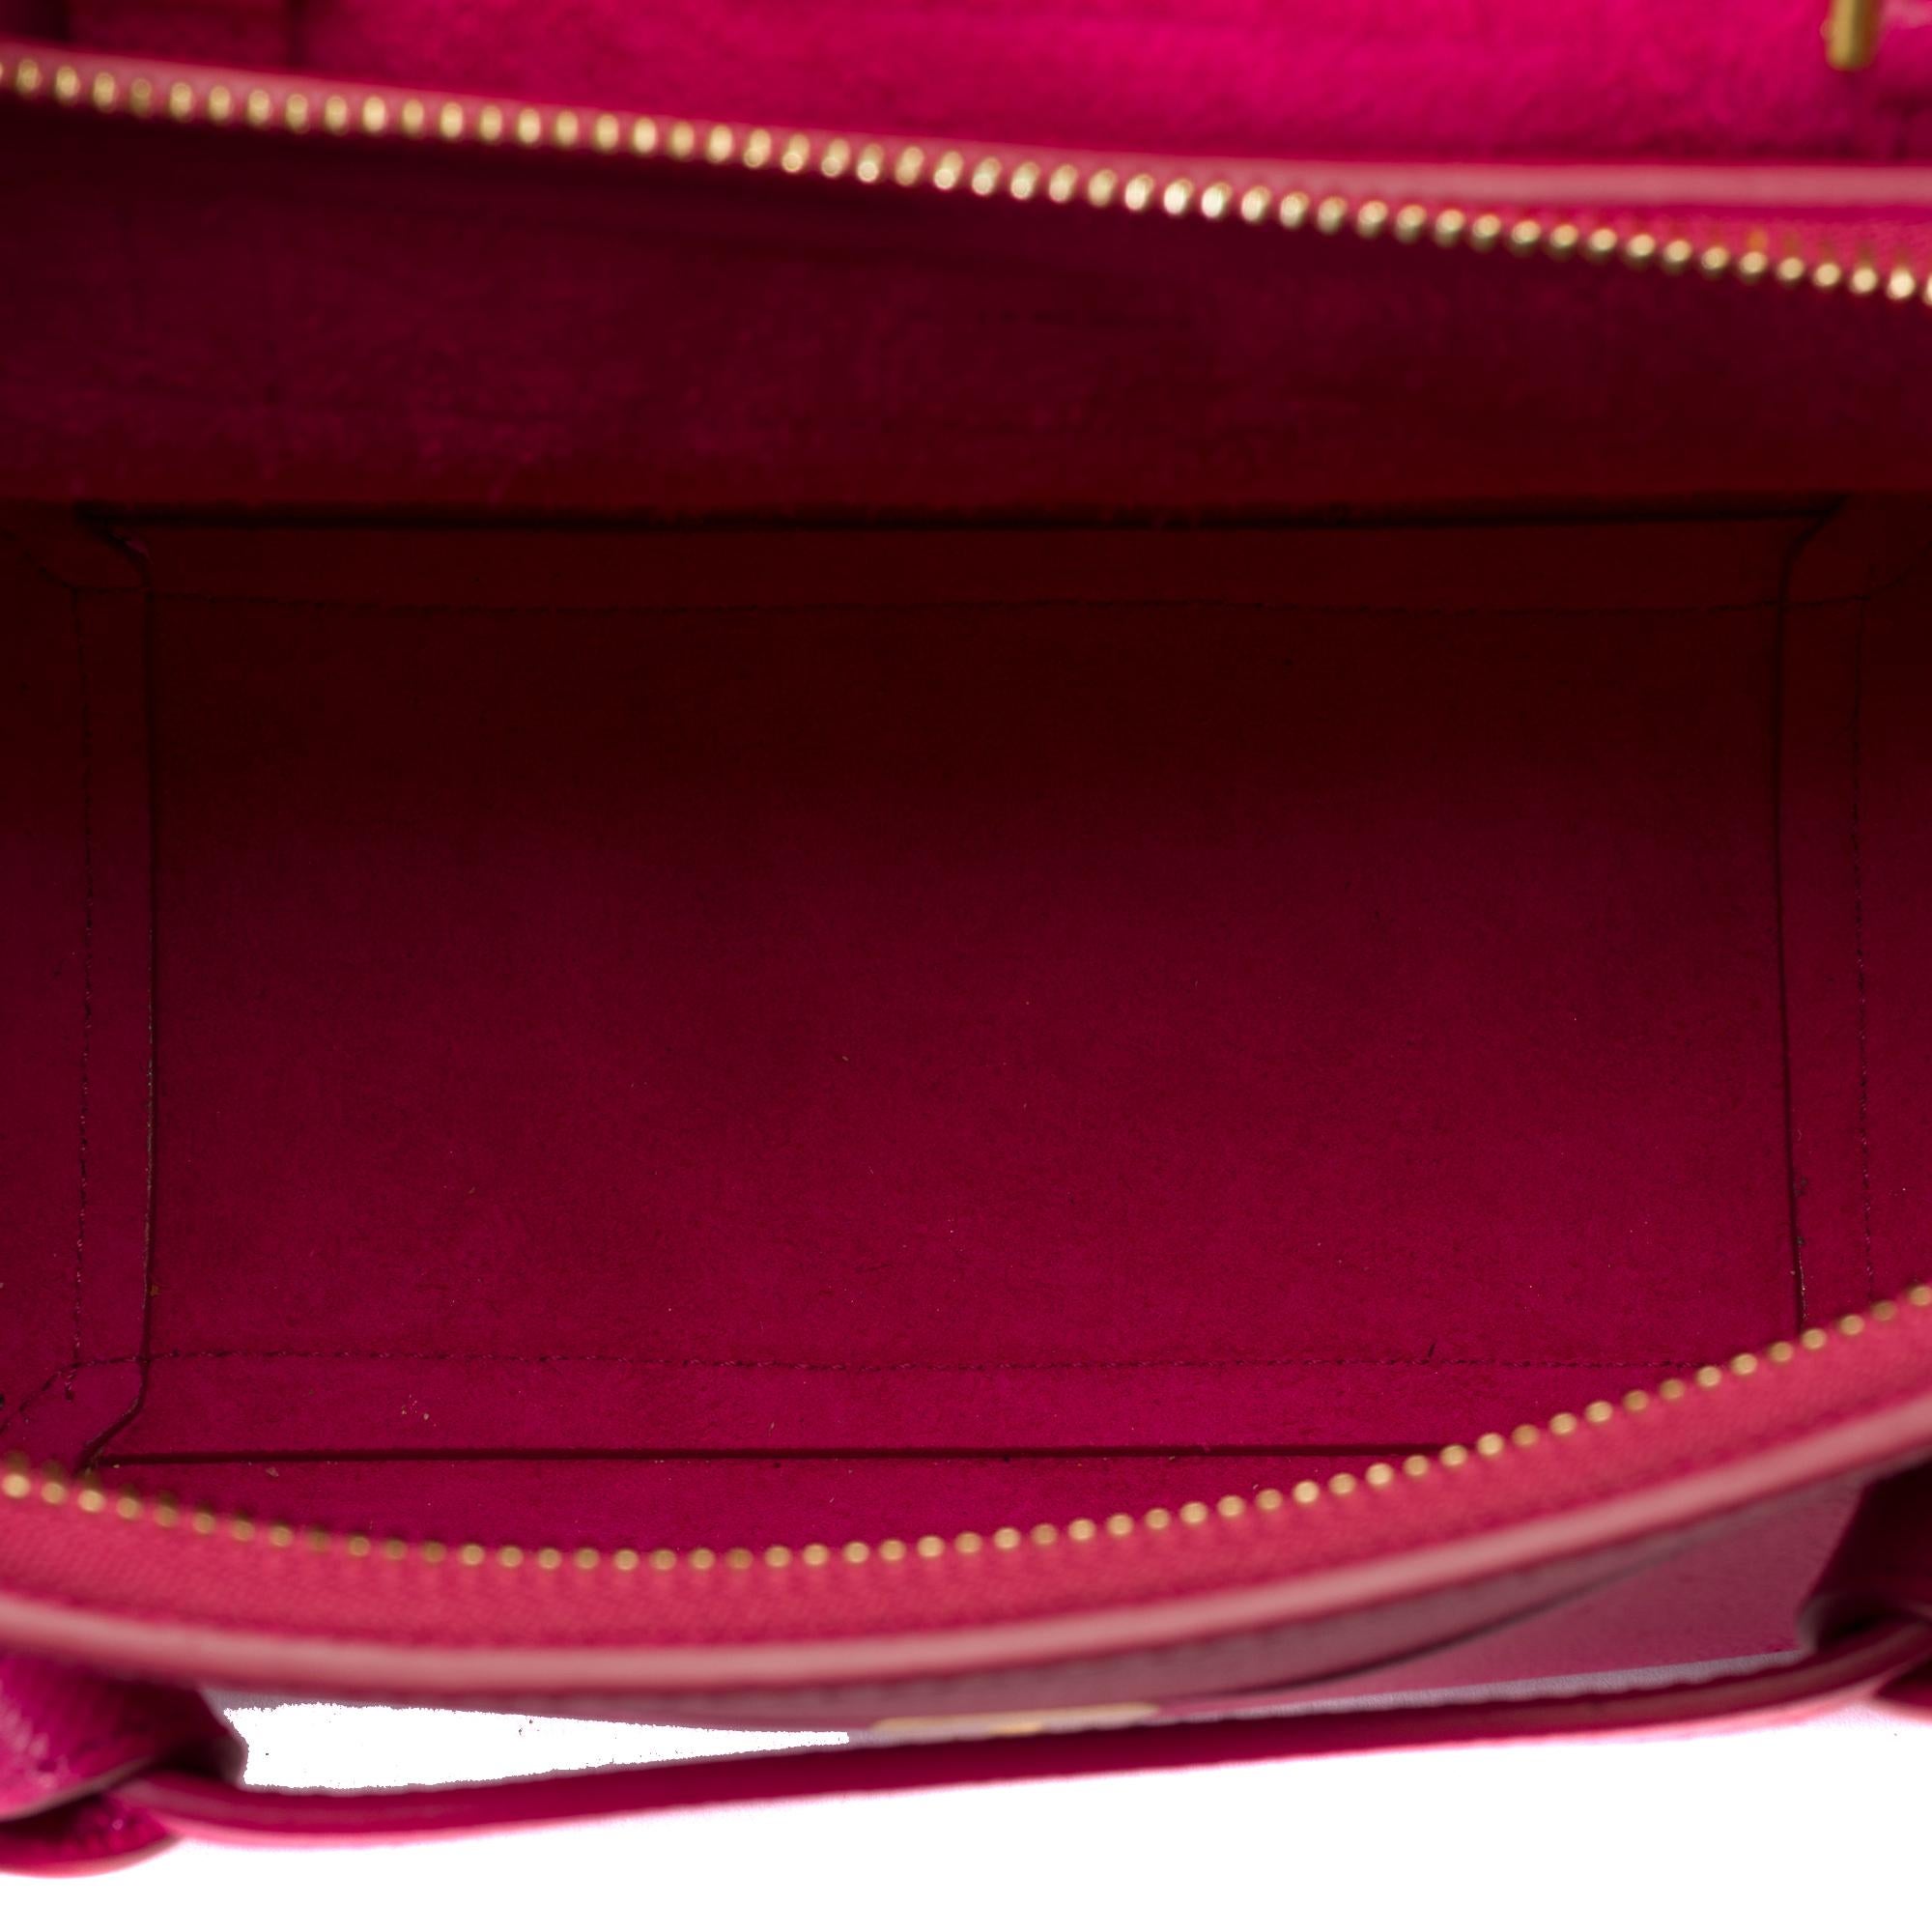 Celine Belt Nano handbag strap in pink calf leather, GHW For Sale 5